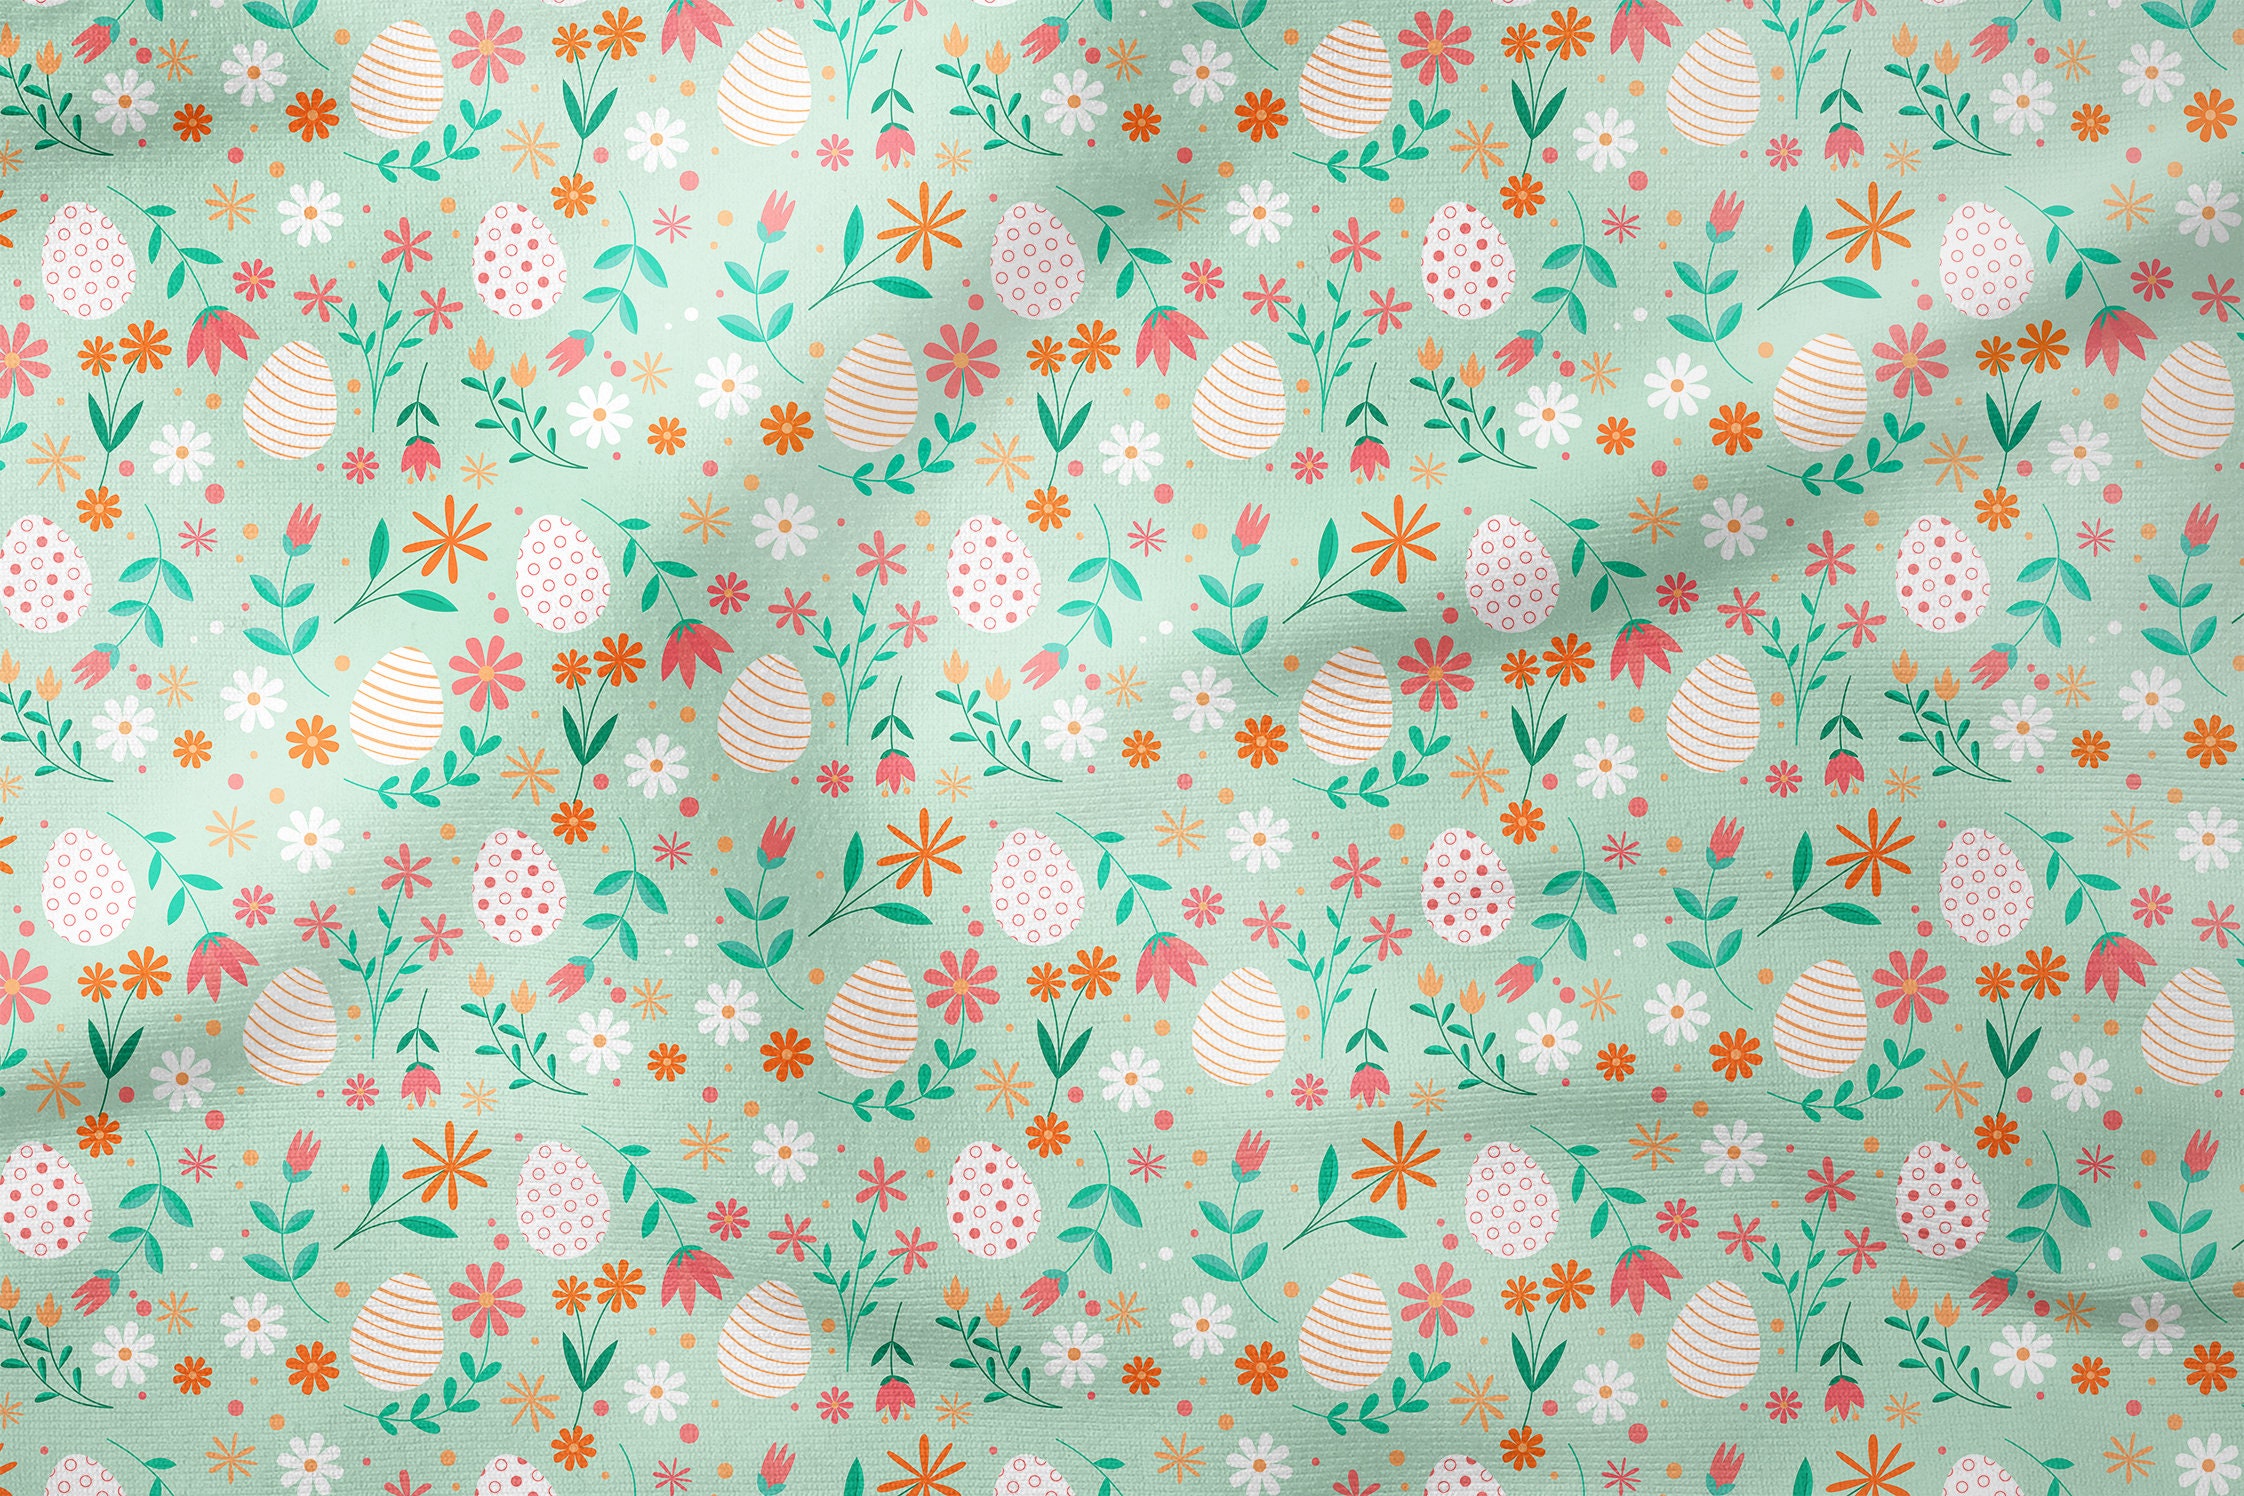  Soimoi Green Cotton Poplin Fabric Floral Alphabet Text